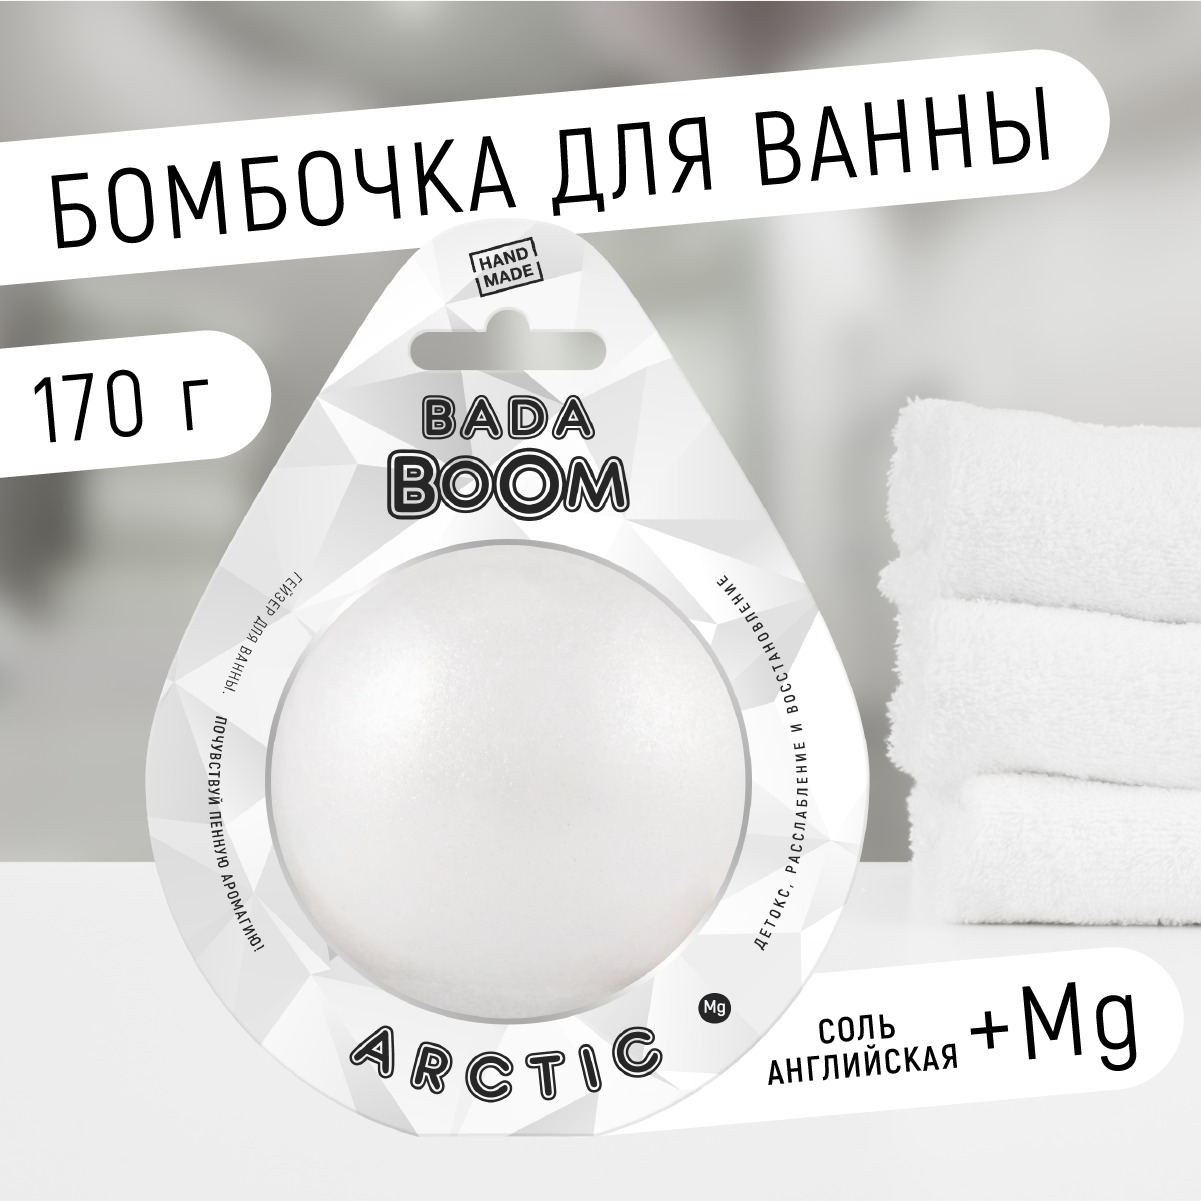 Бомбочка для ванны Arctic без запаха 170 г тело человека как работает наш удивительный организм доктор макс пембертон